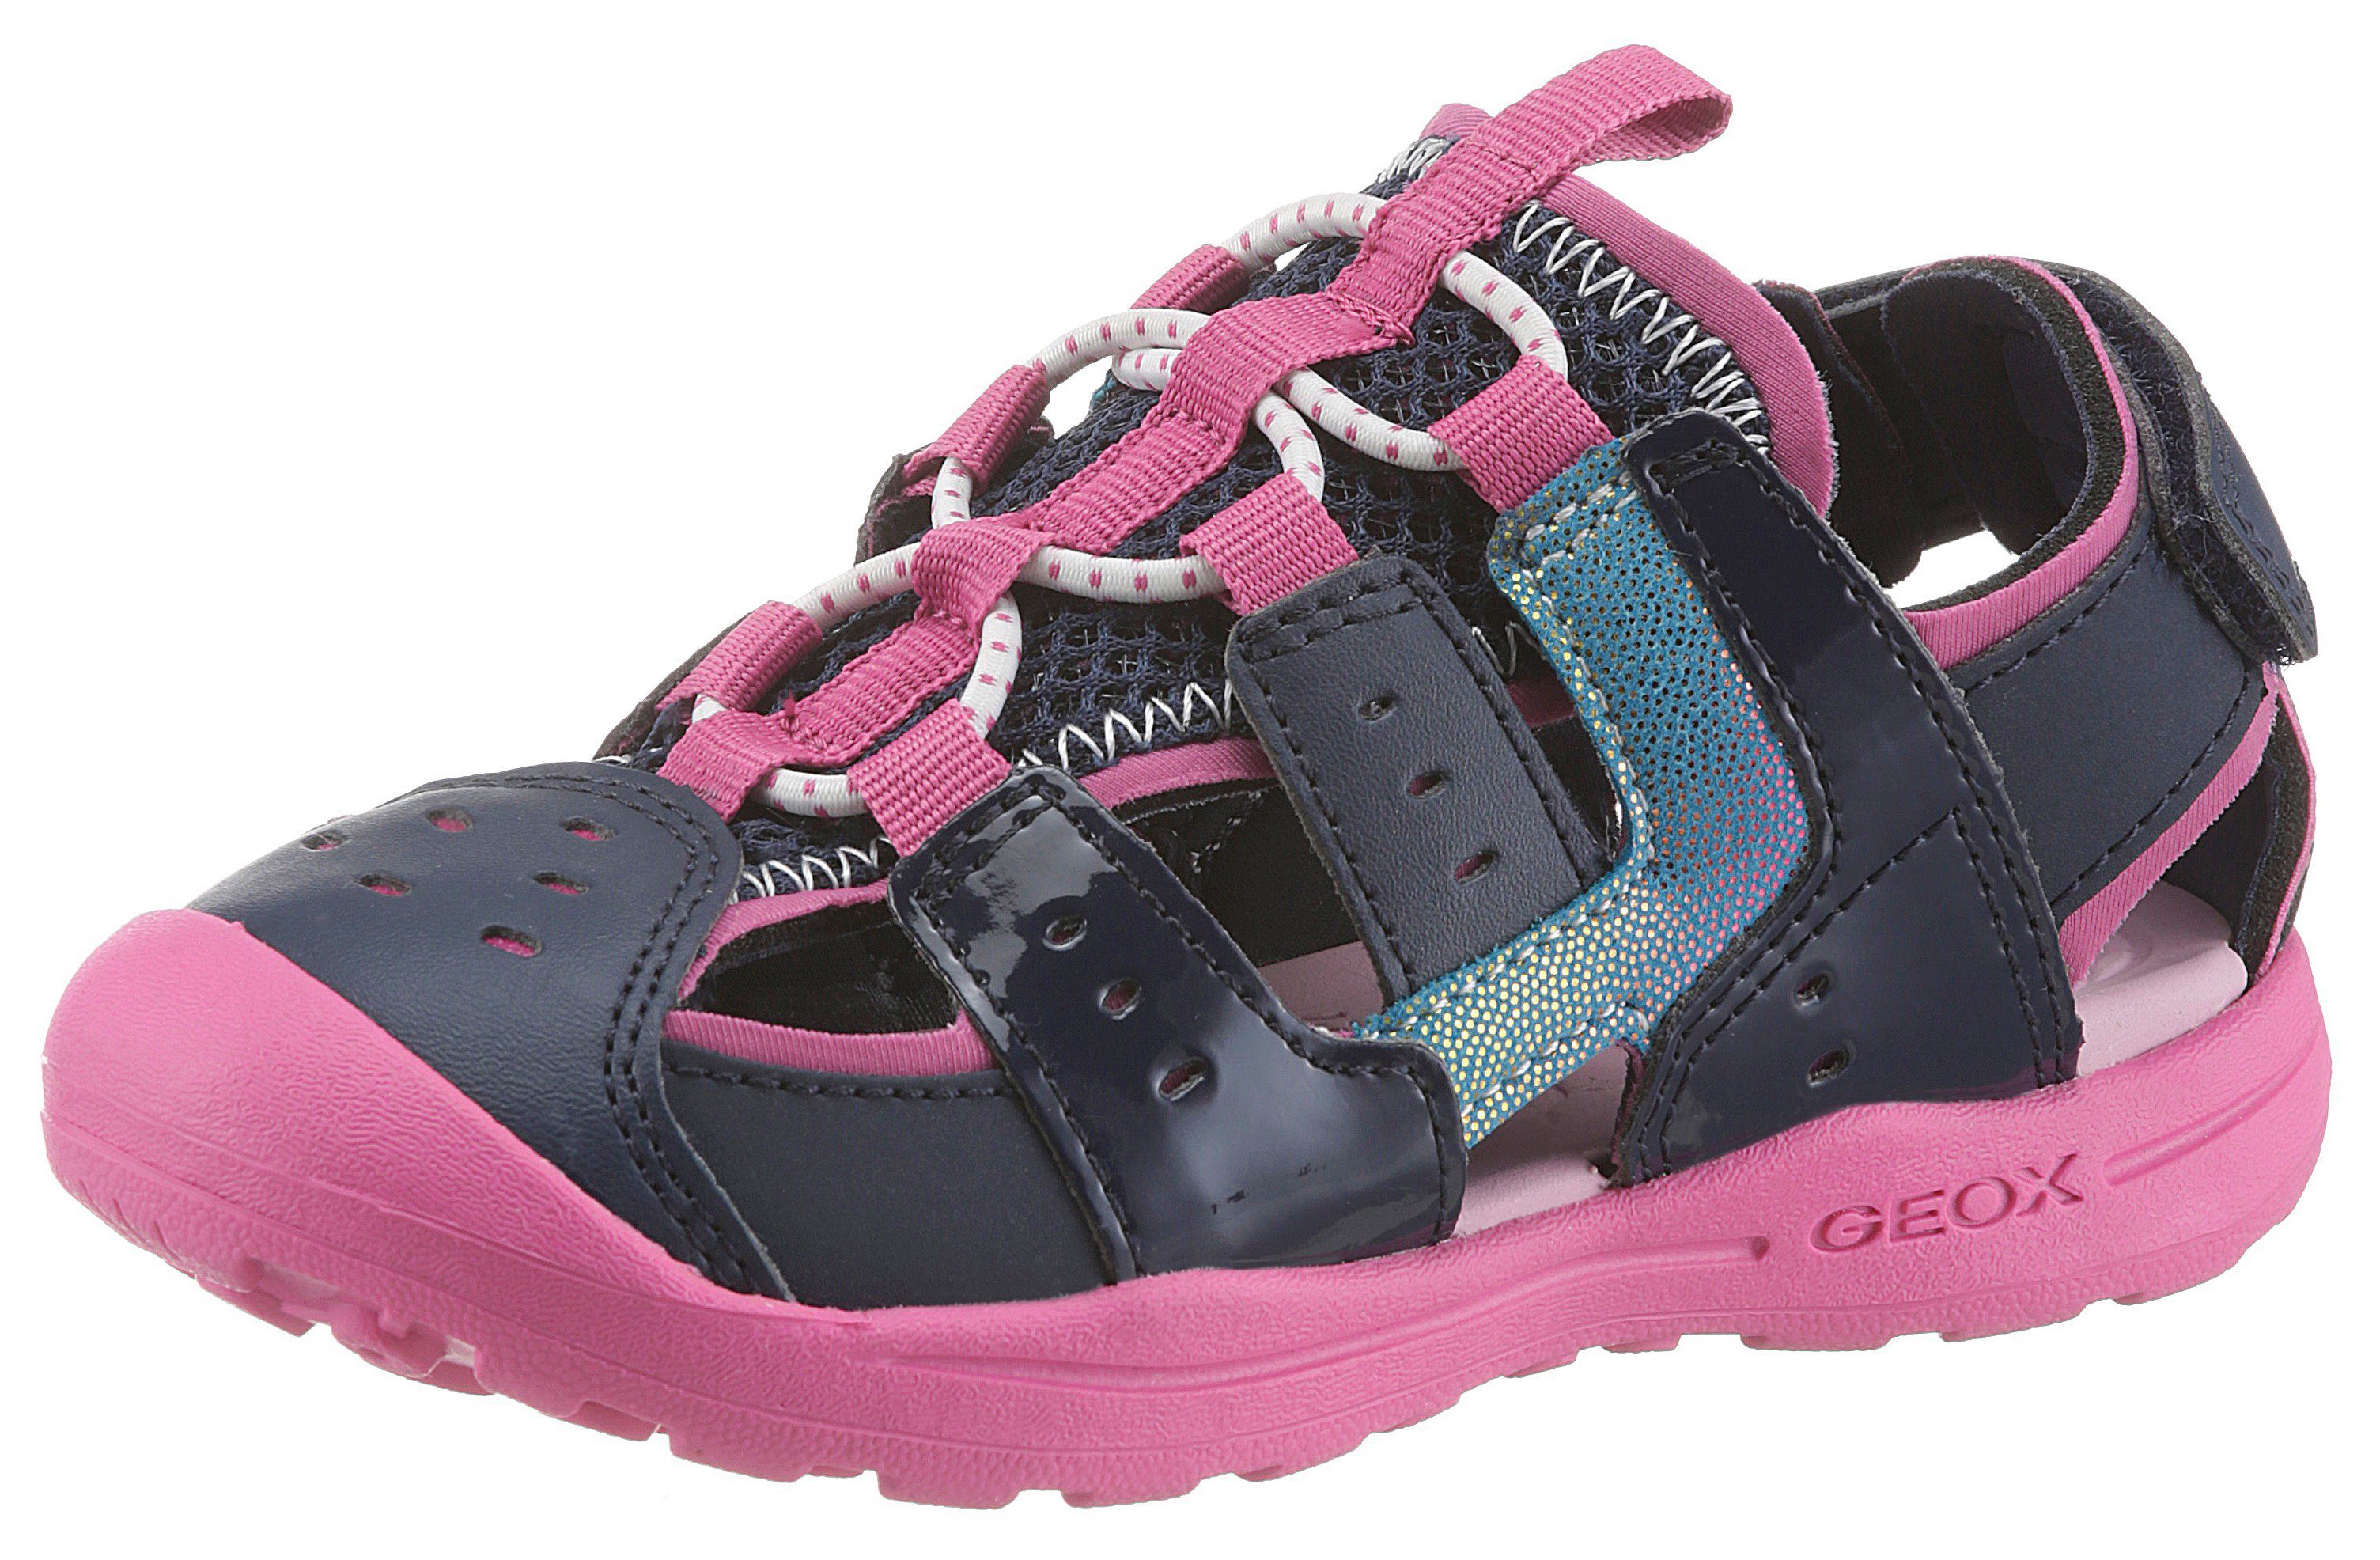 Geox Kids »VANIETT GIRL« Sandale mit Klettverschluss online kaufen | OTTO